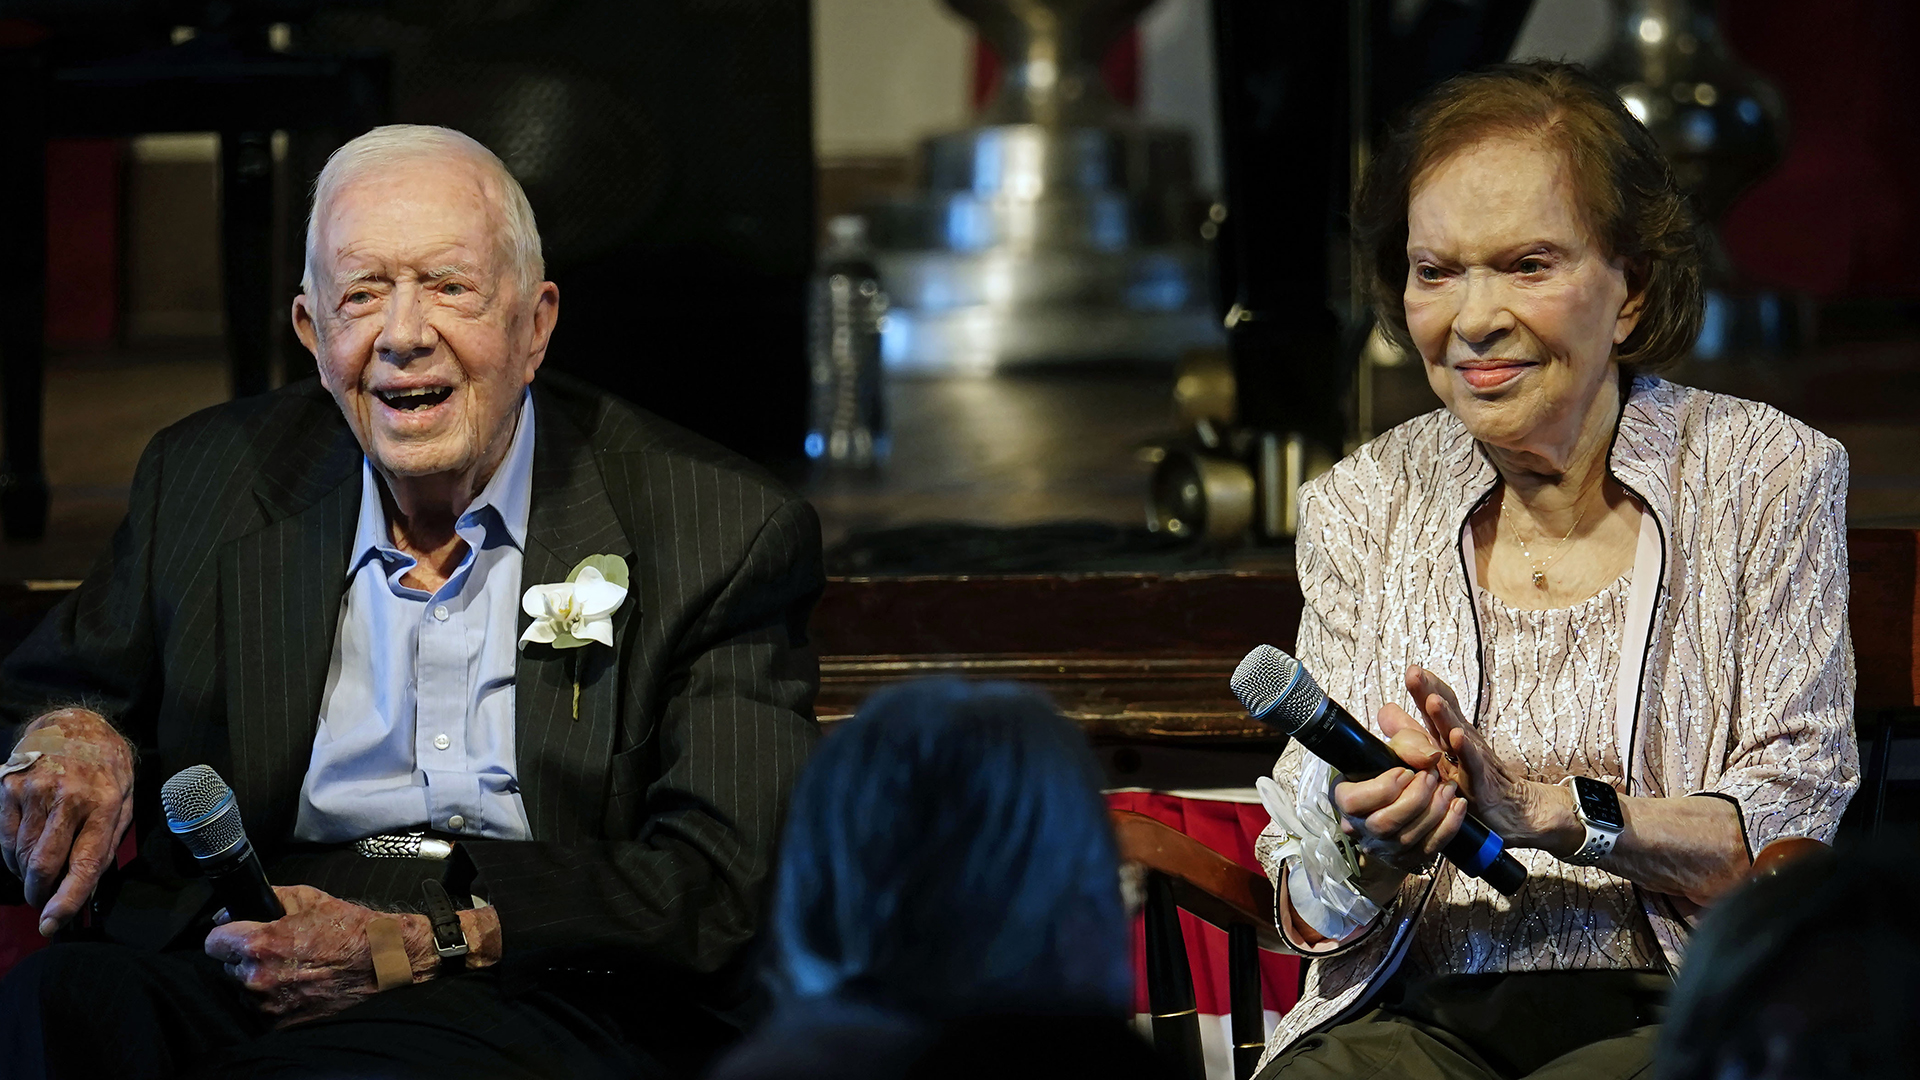 L'ancien président Jimmy Carter et son épouse Rosalynn Carter, sont assis lors d'une réception organisée pour célébrer leur 75e anniversaire de mariage, le 10 juillet 2021, à Plains.